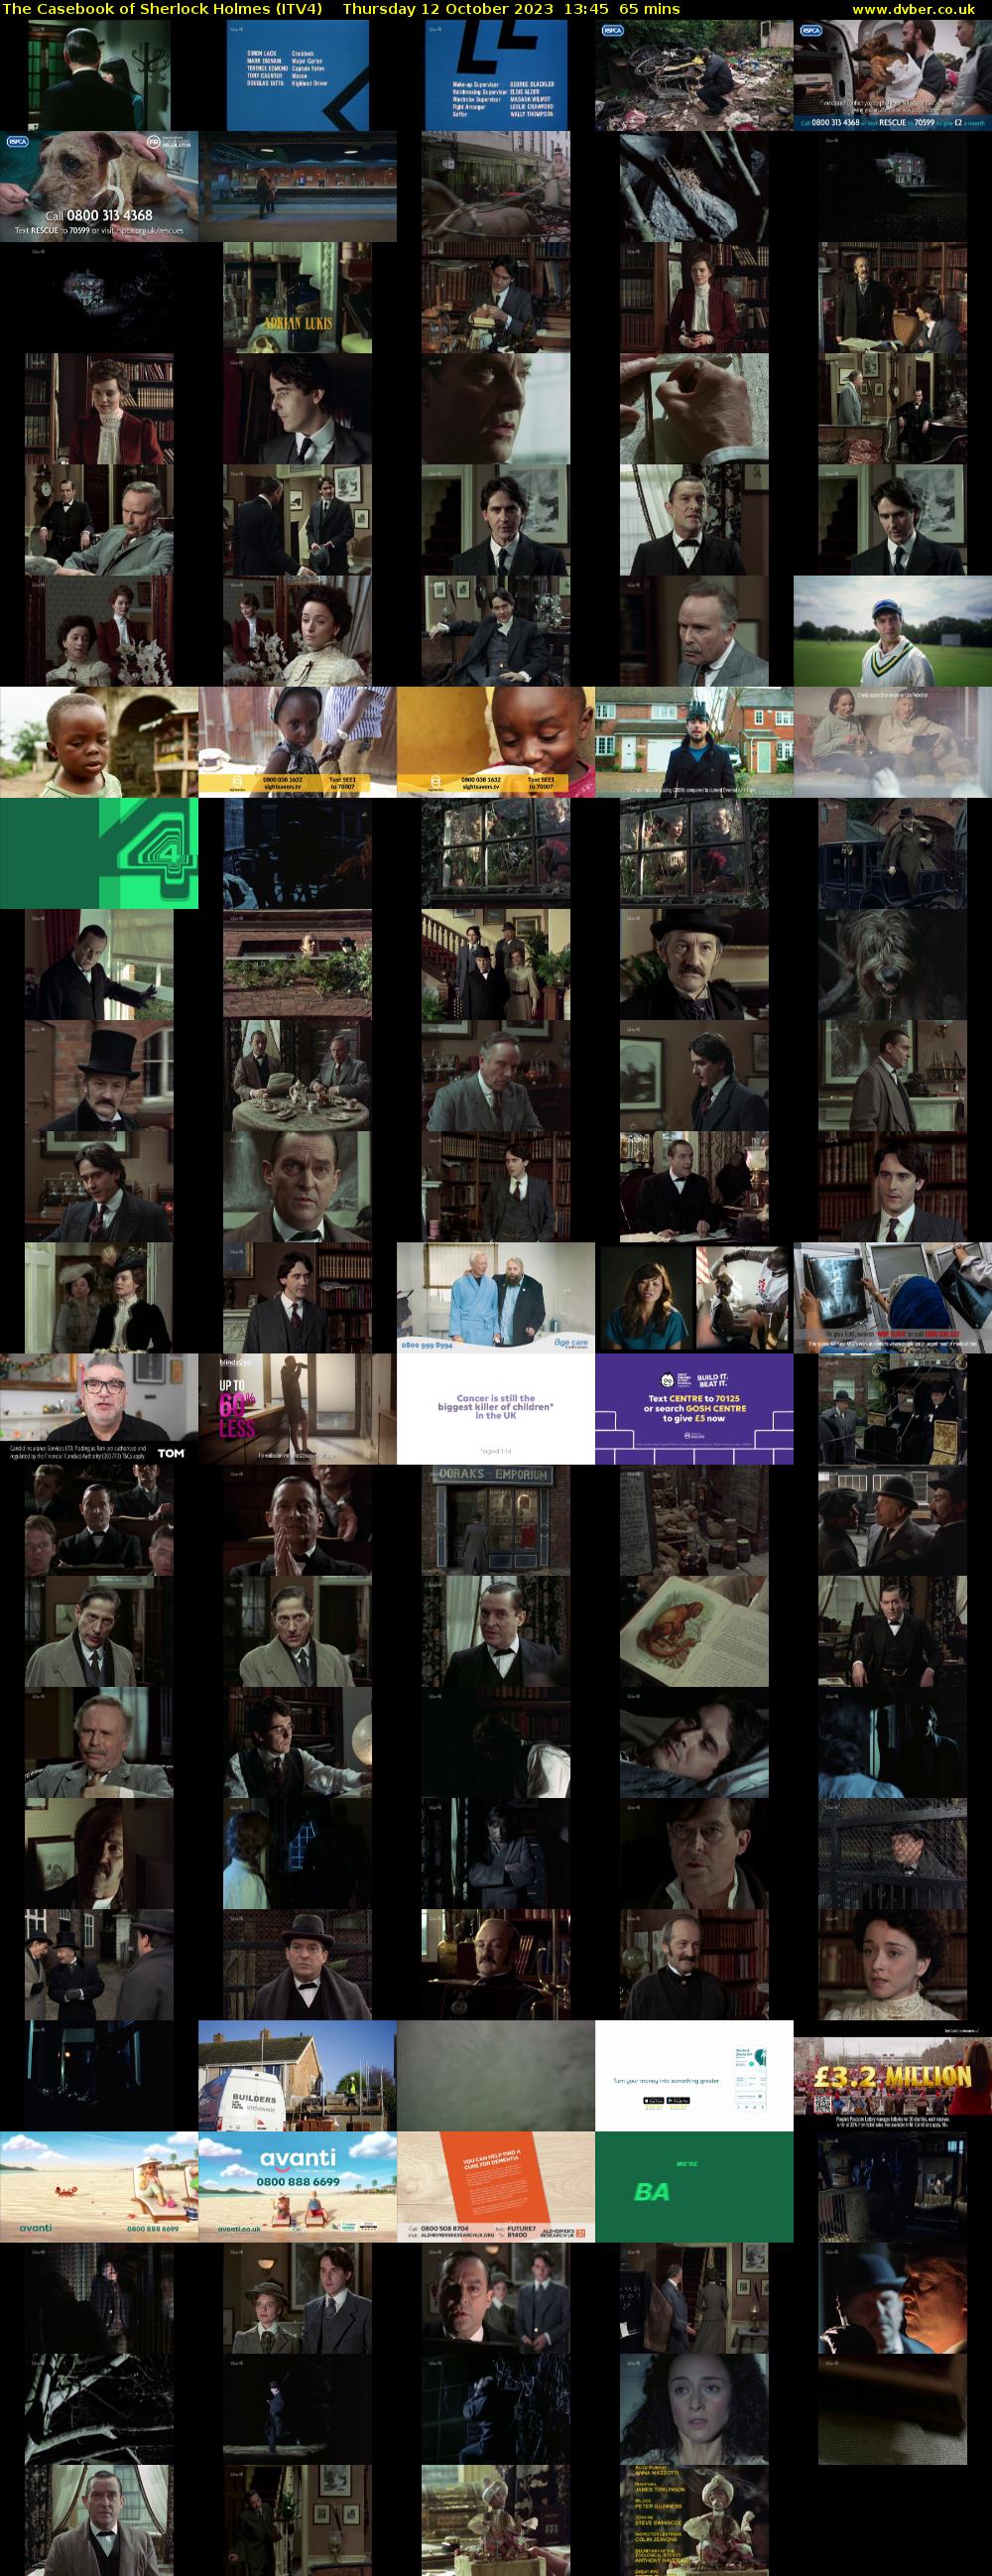 The Casebook of Sherlock Holmes (ITV4) Thursday 12 October 2023 13:45 - 14:50